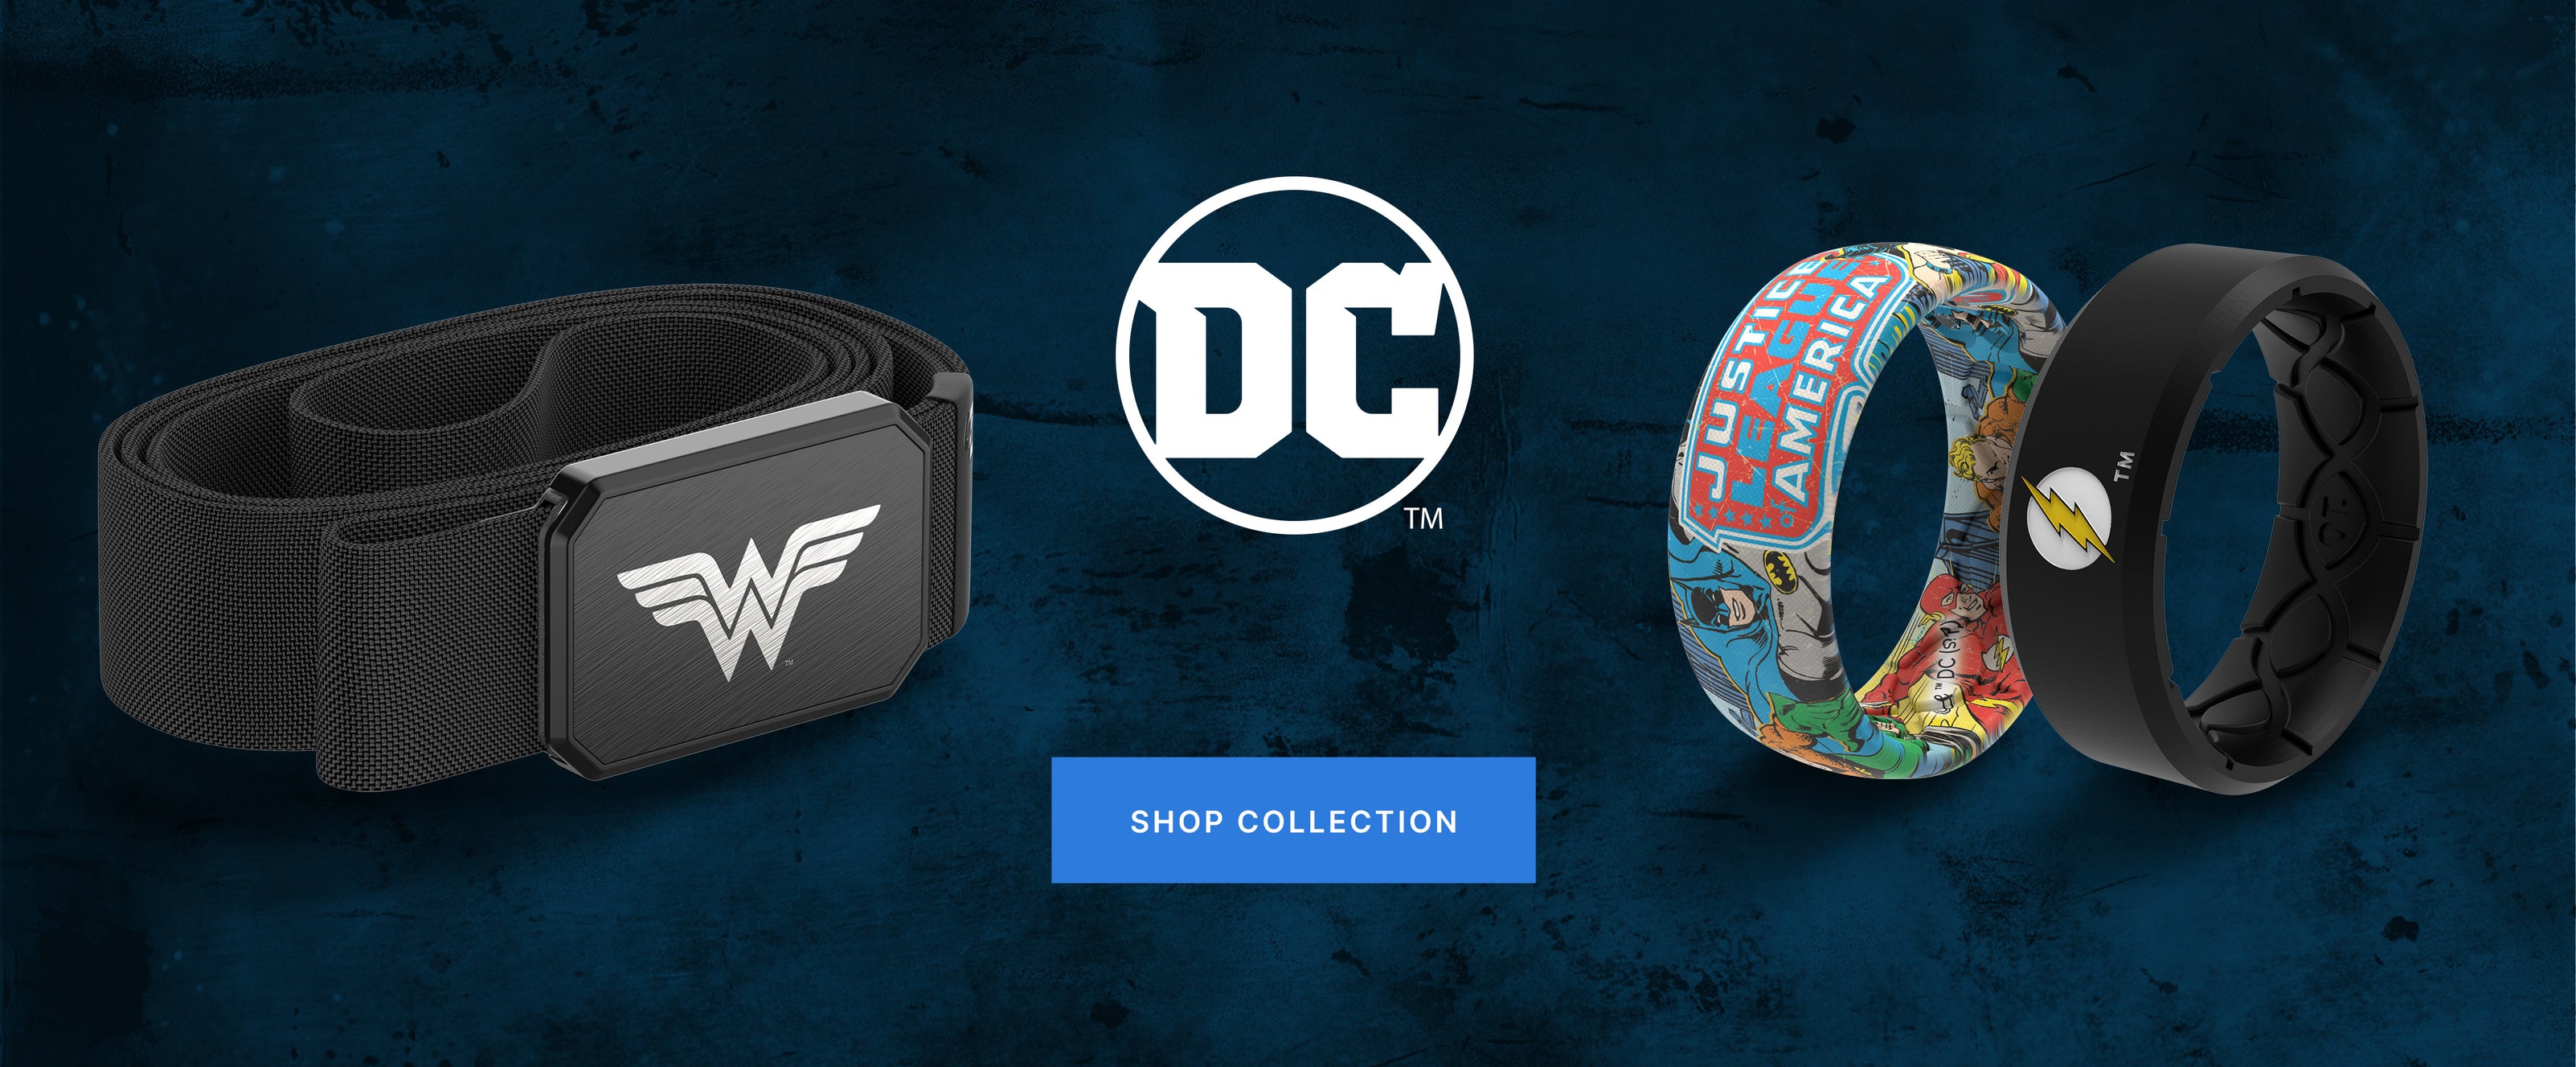 DC Shop Collection